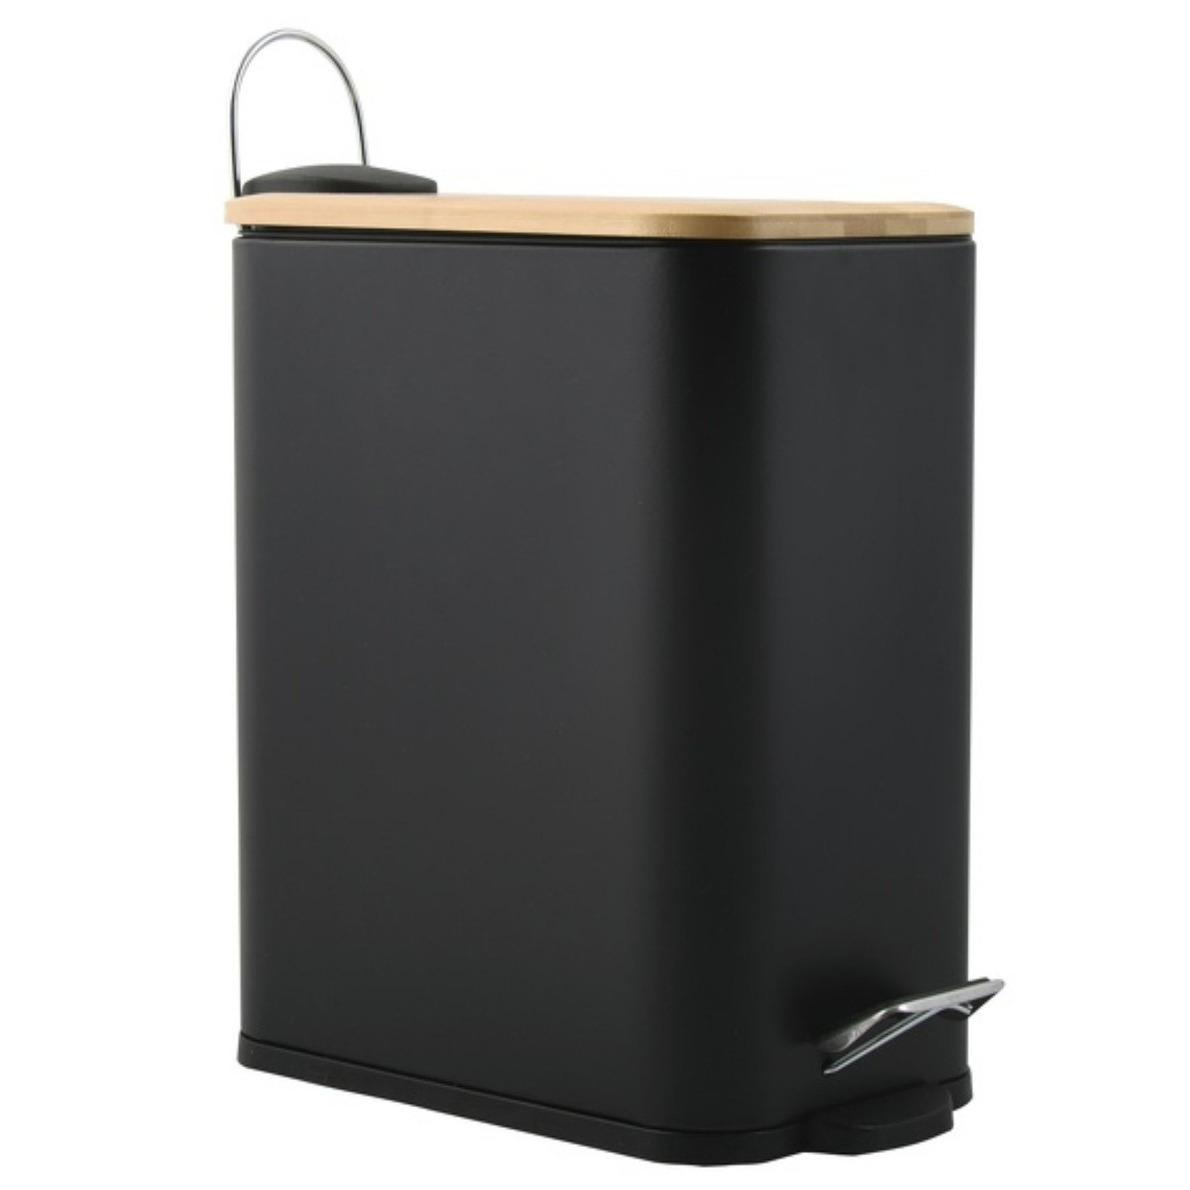 Pedaalemmer Vienne zwart 5 liter metaal 28 x 29 cm soft-close toilet-badkamer